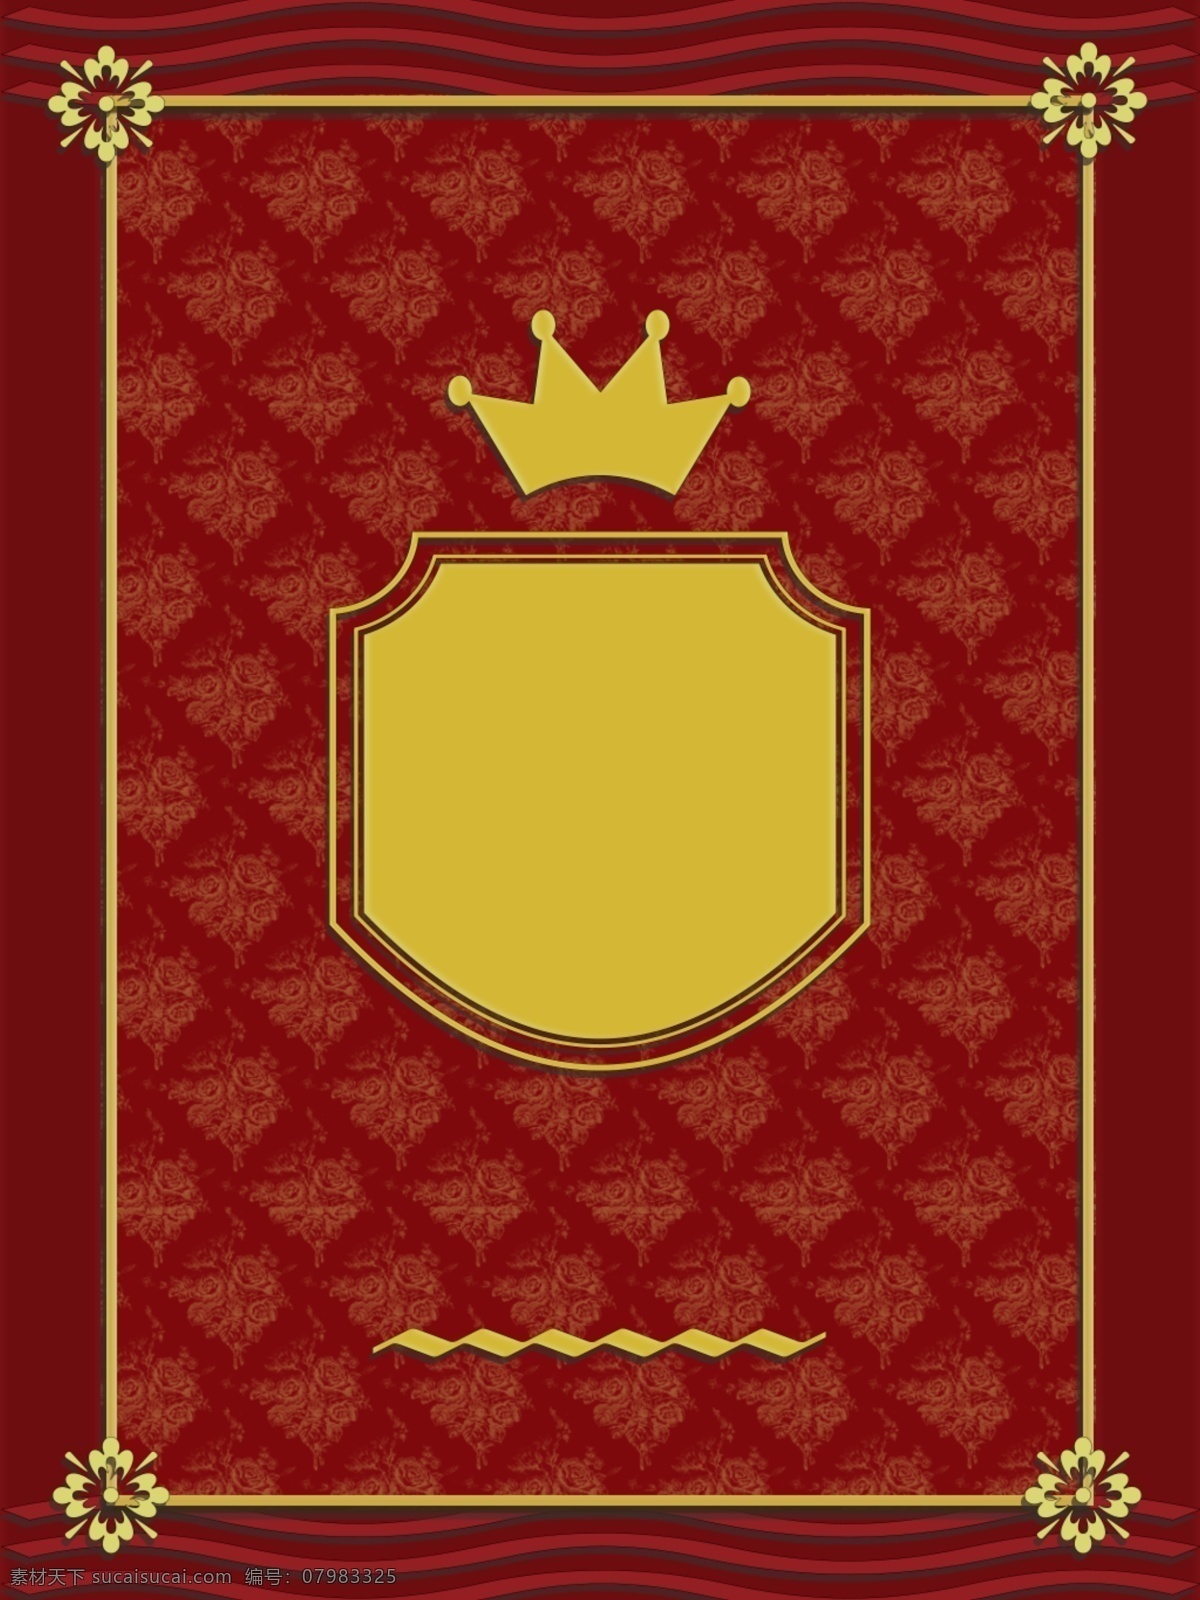 欧式 复古 红 金 封面 边框 背景 皇冠